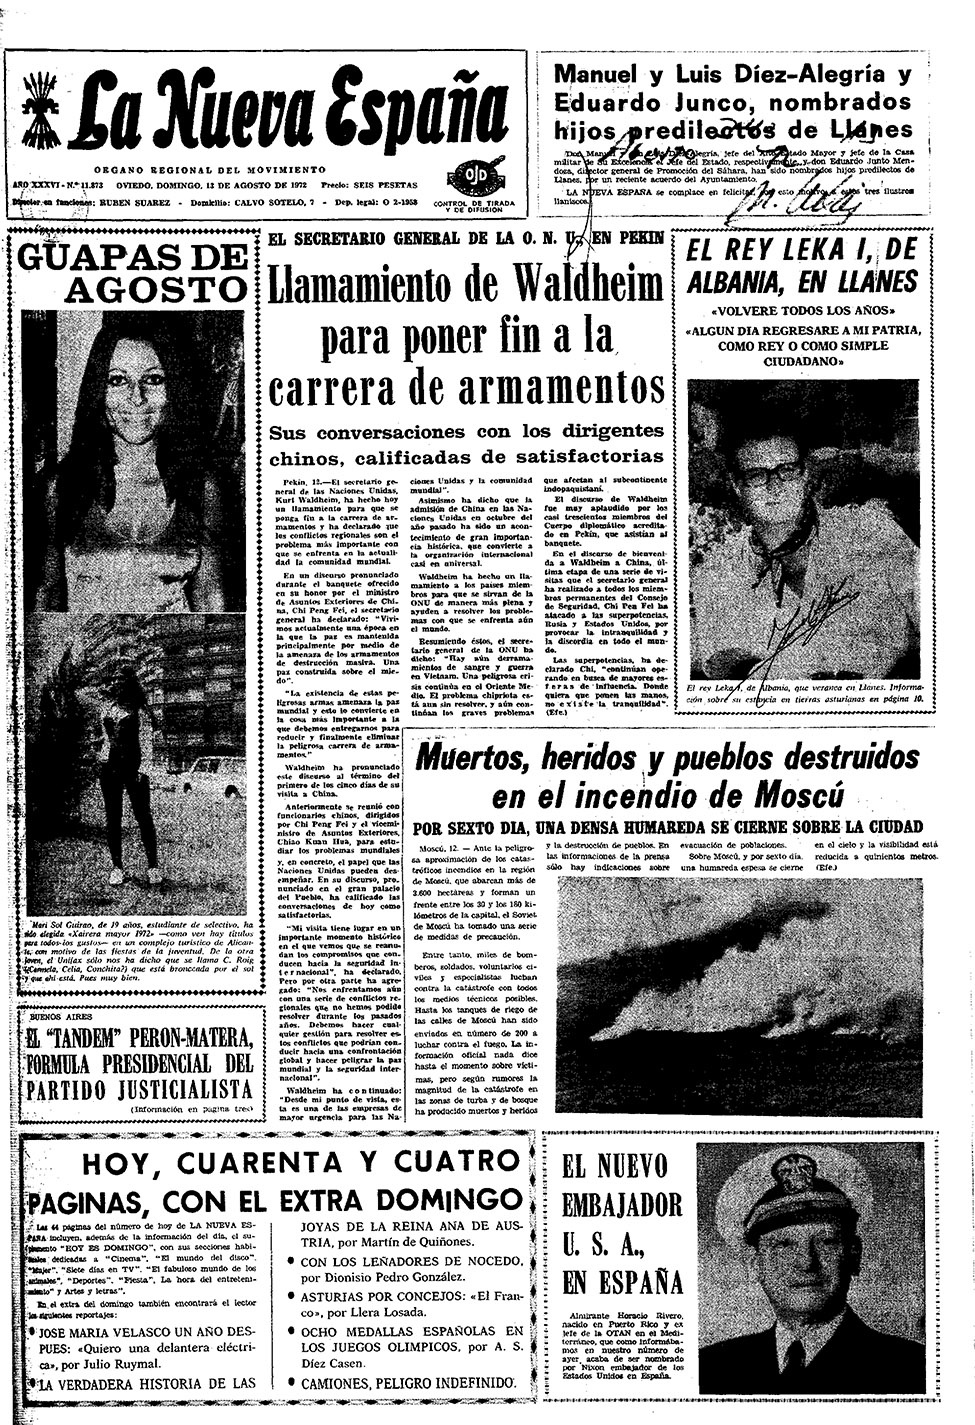 Portada del Domingo, 13 de Agosto de 1972